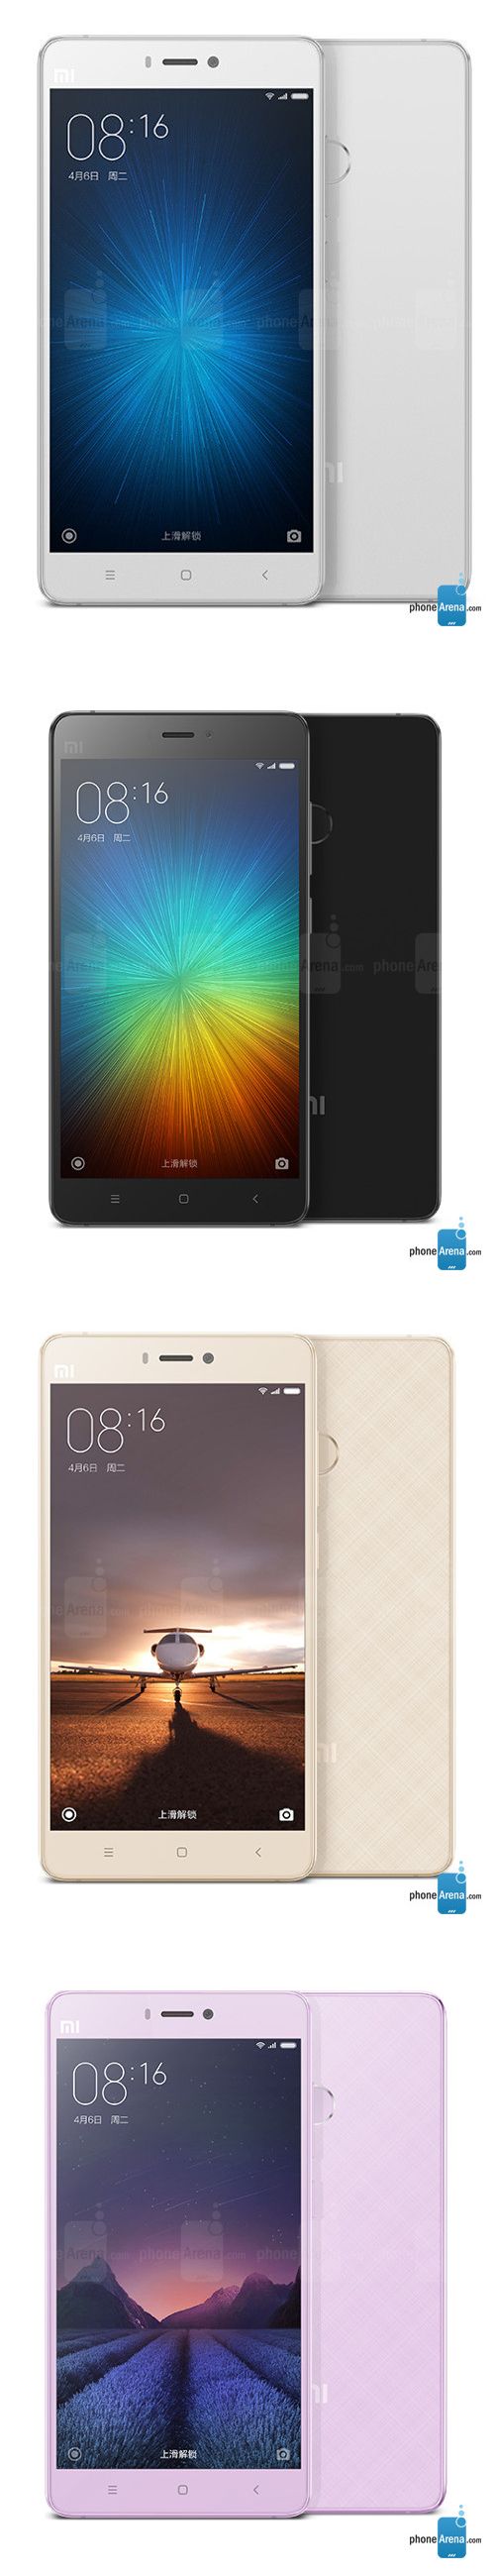 Itt a Xiaomi Mi 4s, a harmadik utód, nevetséges áron